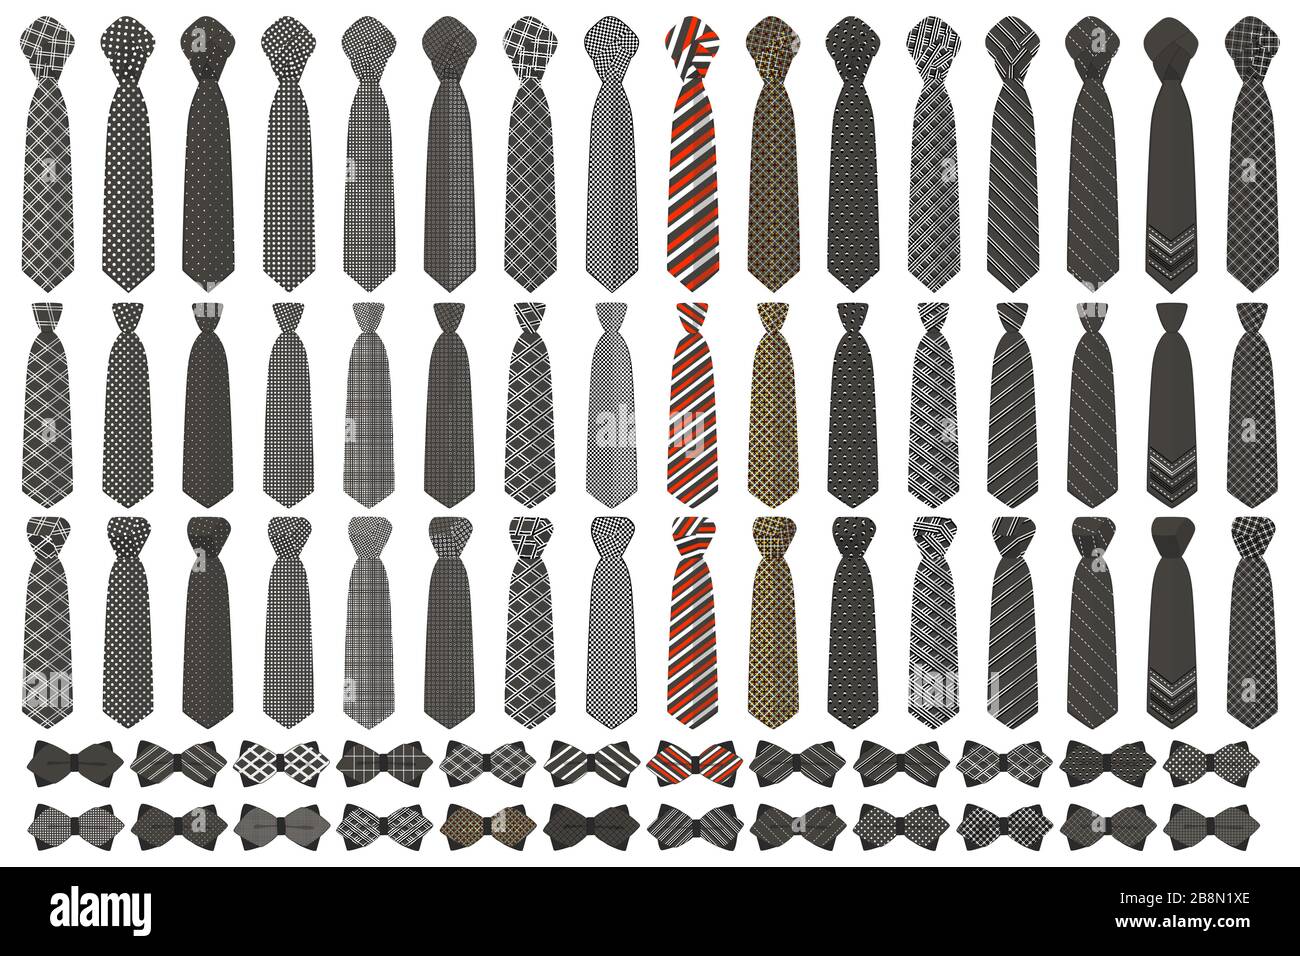 Cravat bow tie immagini e fotografie stock ad alta risoluzione - Alamy